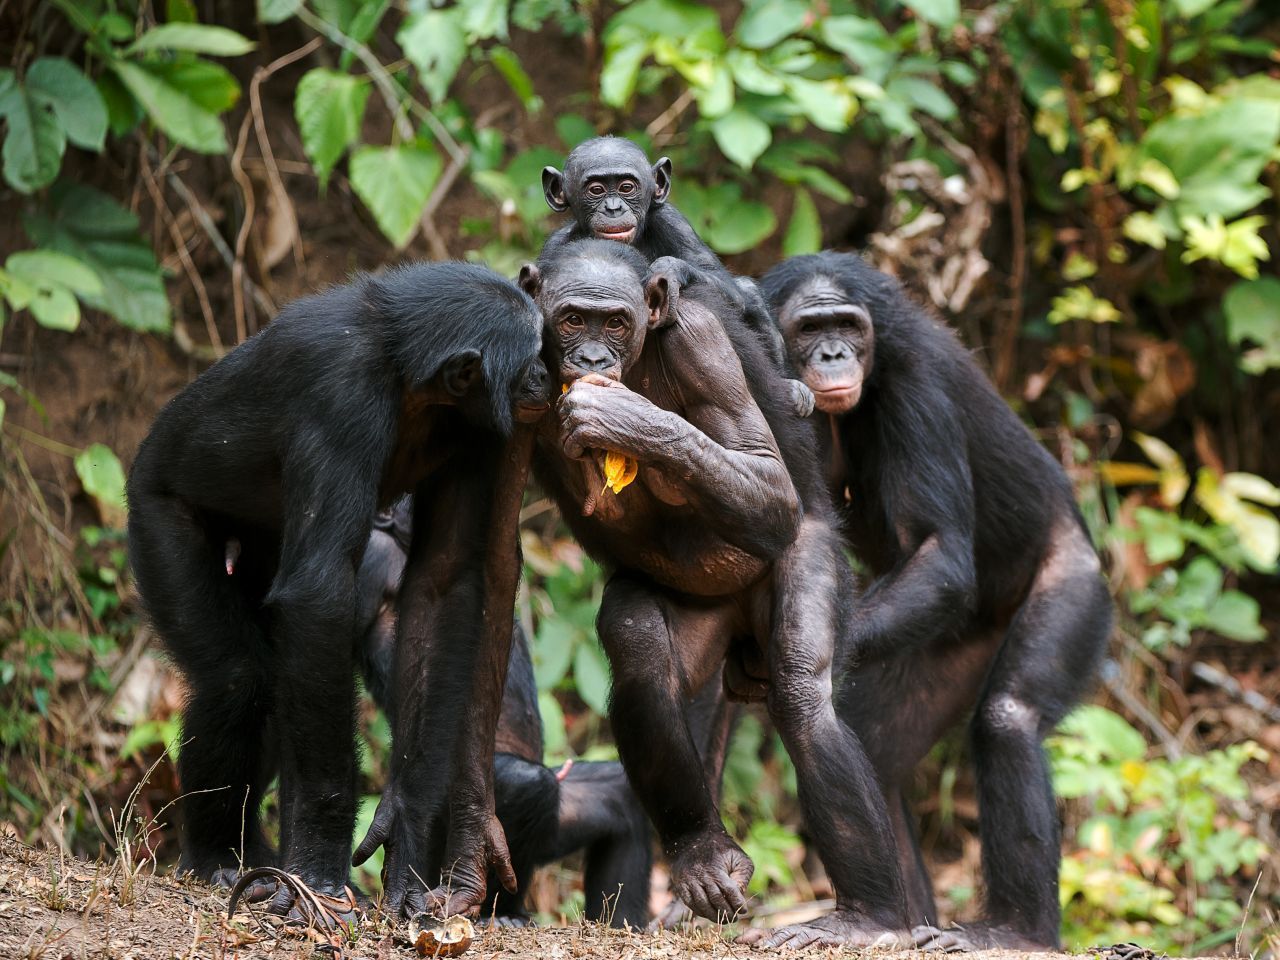 Frühreife Affen: Bonobo-Weibchen kommen mit 5 Jahren in die Pubertät, also 3 Jahre eher als die verwandten Schimpansen. Was aber nicht heißt, dass sie auch früher Nachwuchs bekommen. Laut Forschern nutzen Bonobos die Zeit, um sexuelle Erfahrungen zu sammeln. 